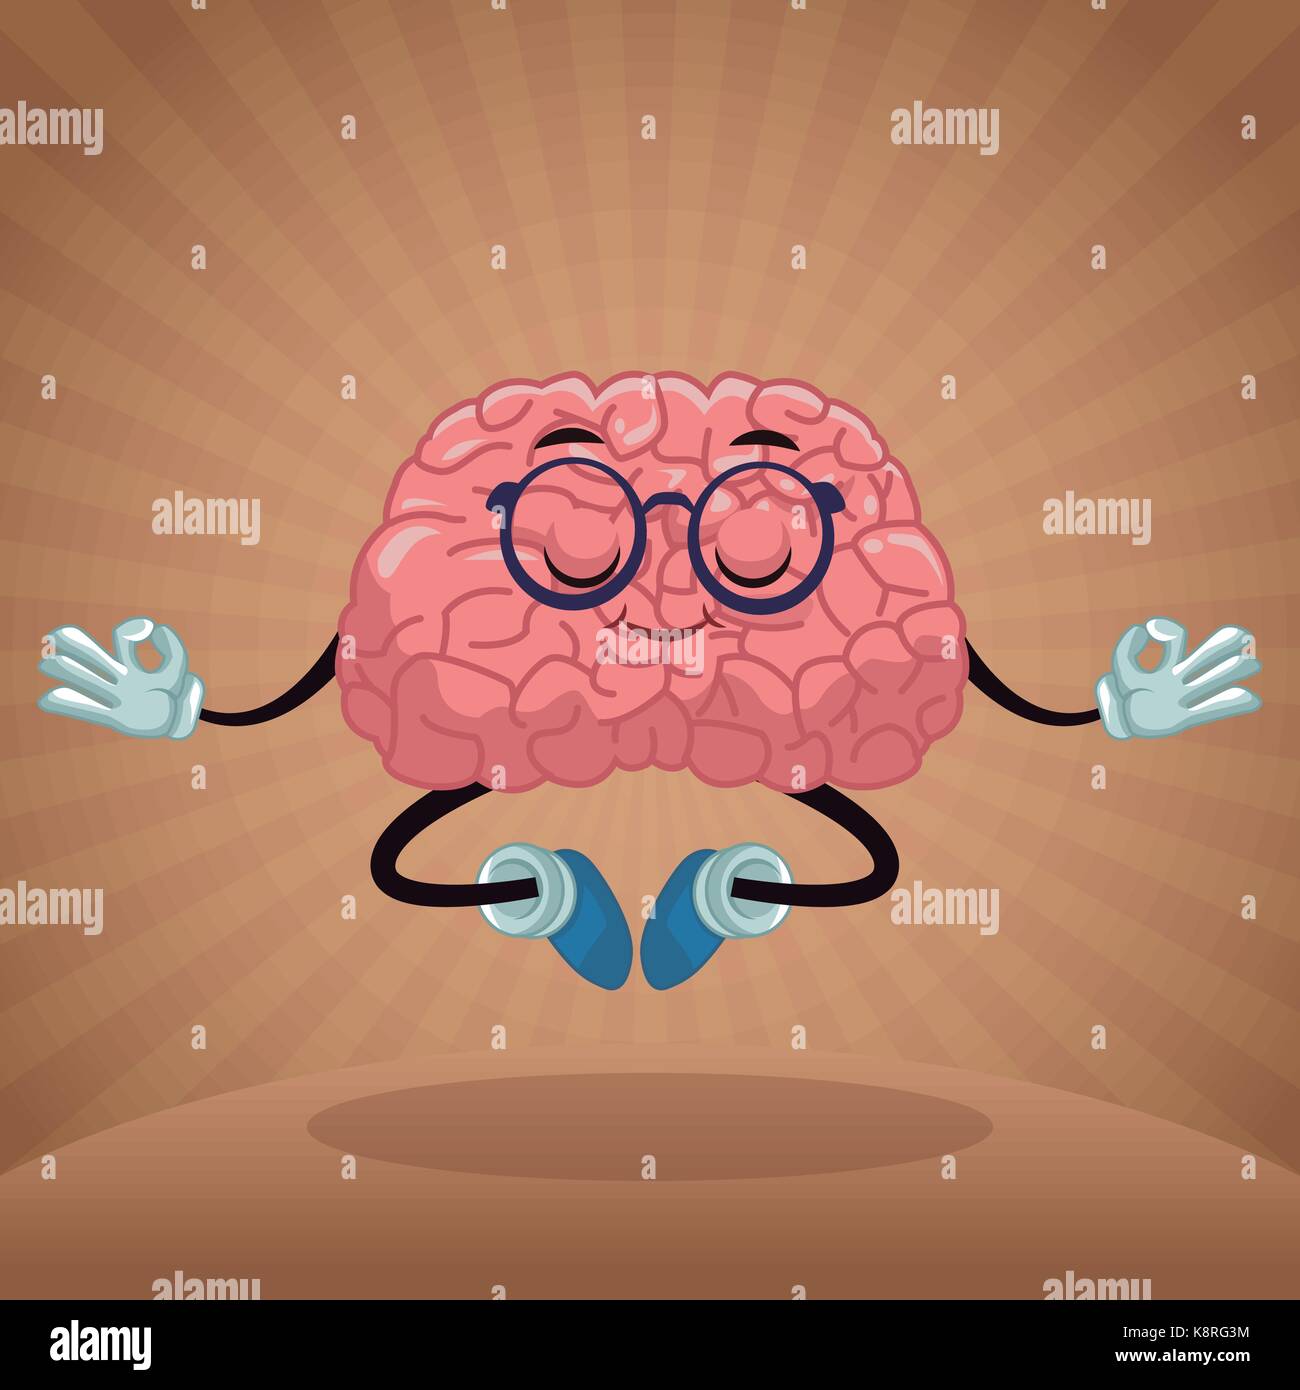 Cute brain cartoon Stock Vector